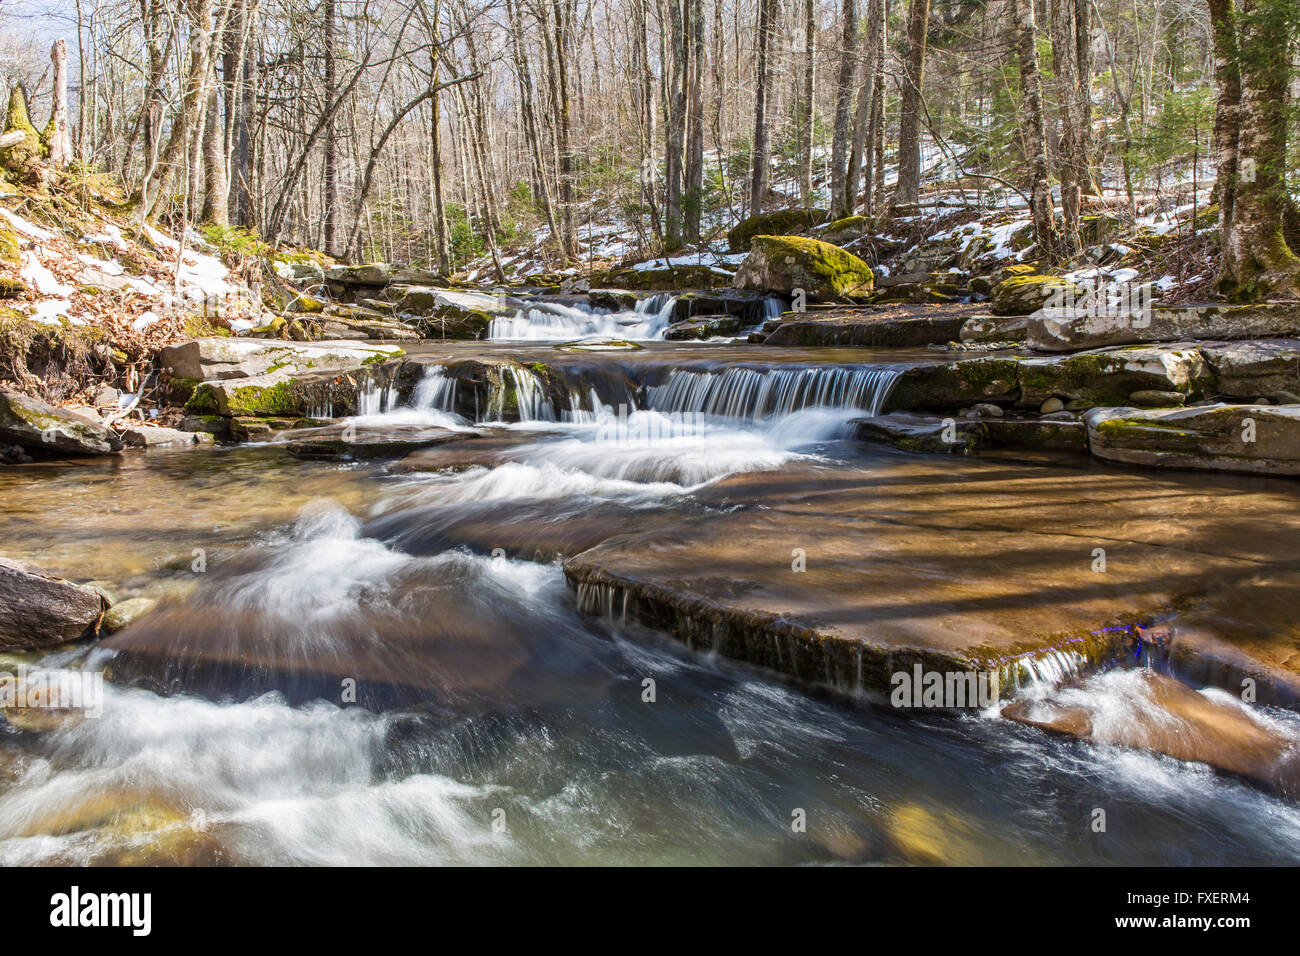 L'eau tombe doucement sur les strates rocheuses à l'ouest de tuer dans les Catskills Mountains of New York. Banque D'Images